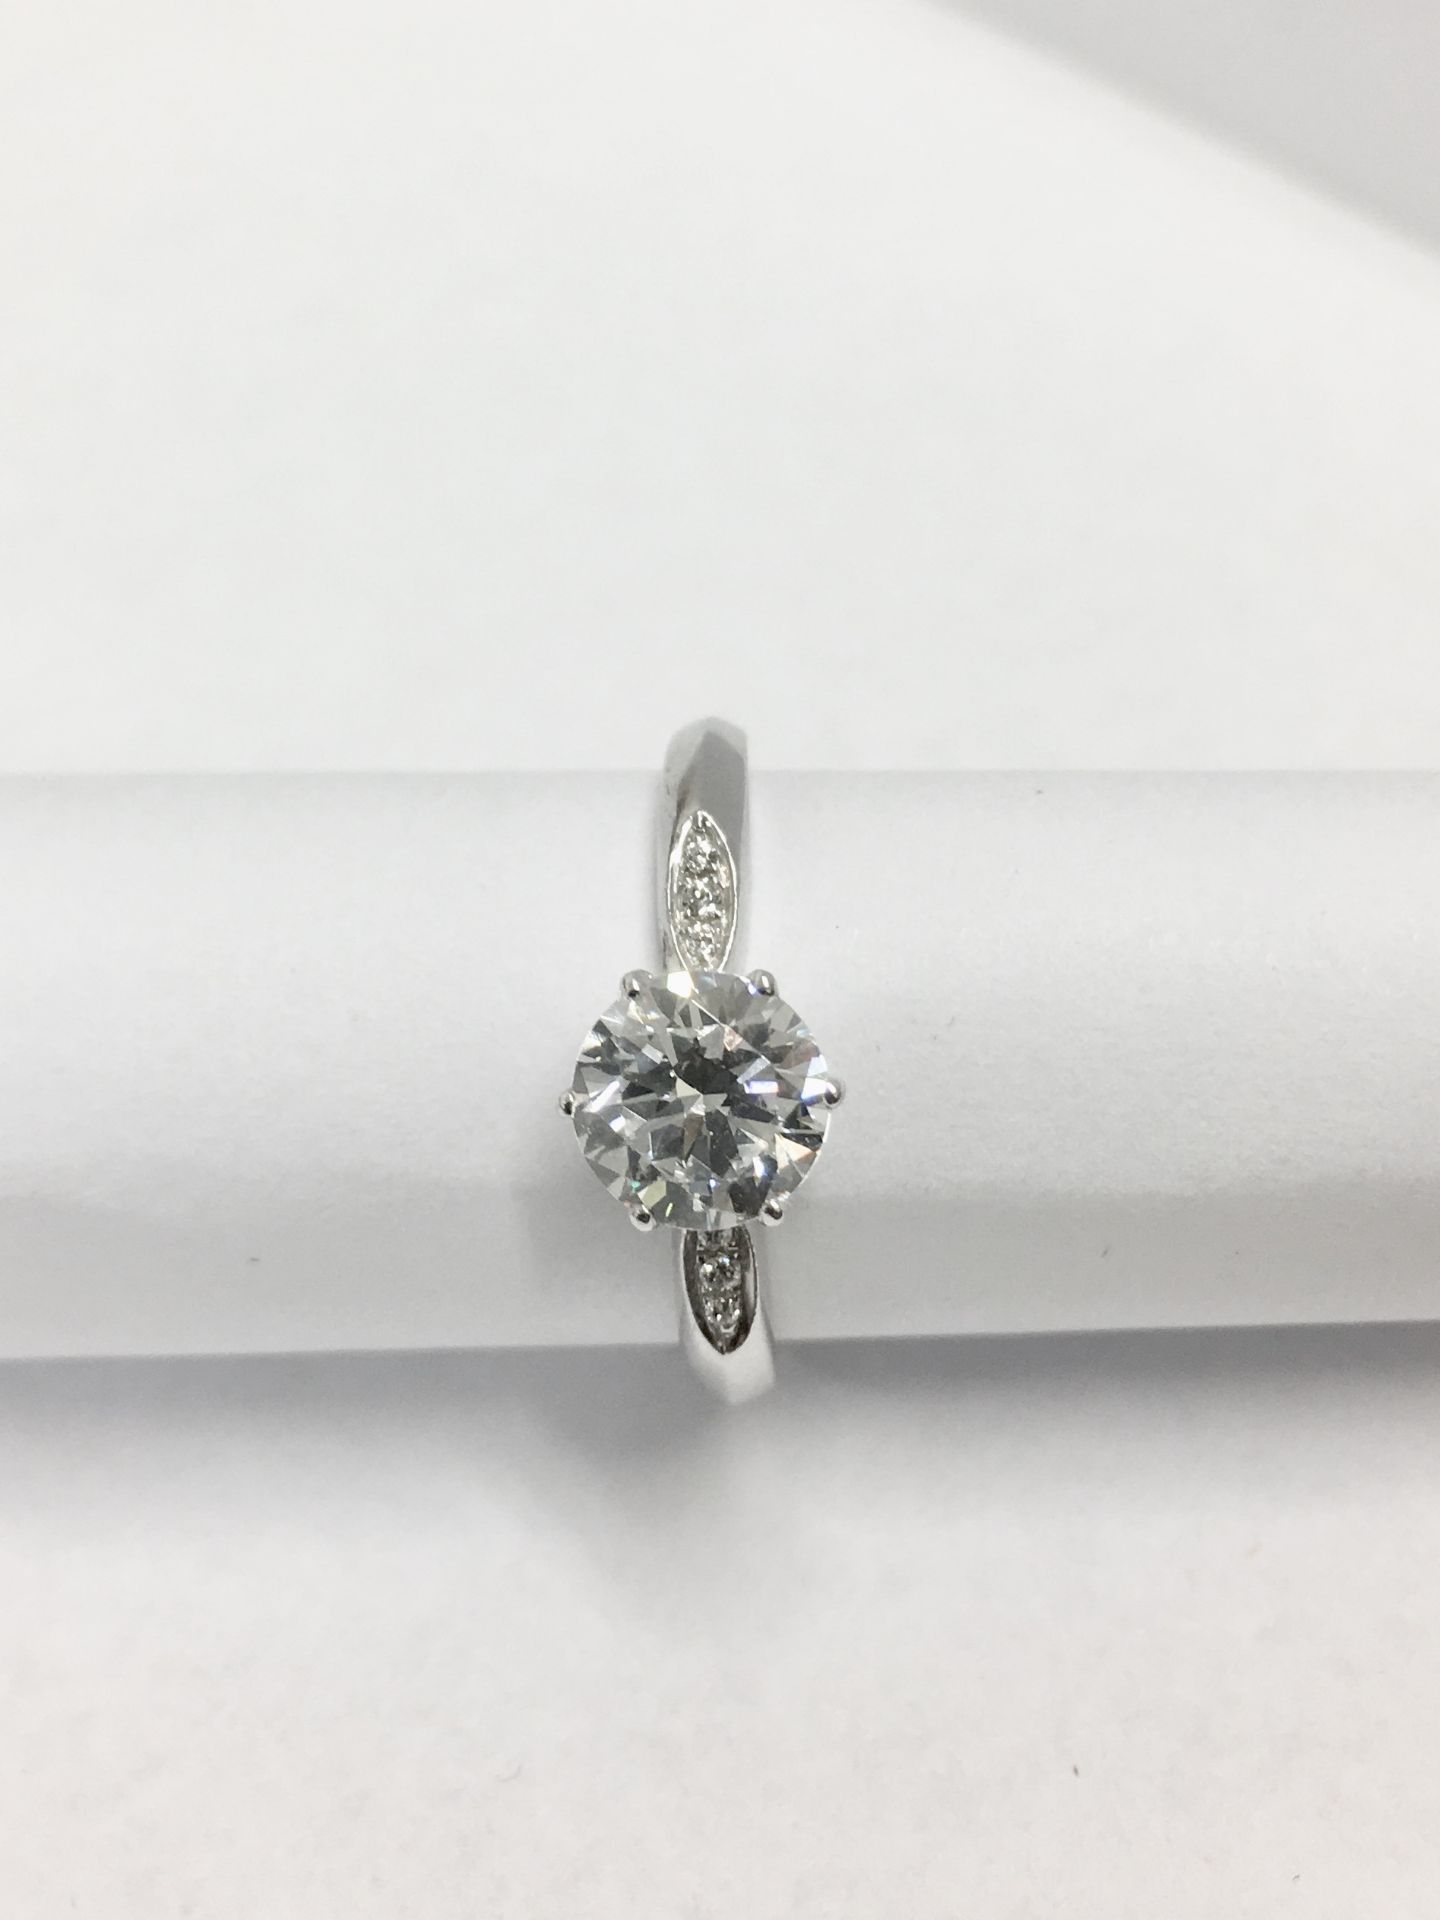 Platinum diamond solitaire ring,0.50ct brilliant cut diamond h colour vs clarity(clarity enhanced), - Bild 4 aus 4